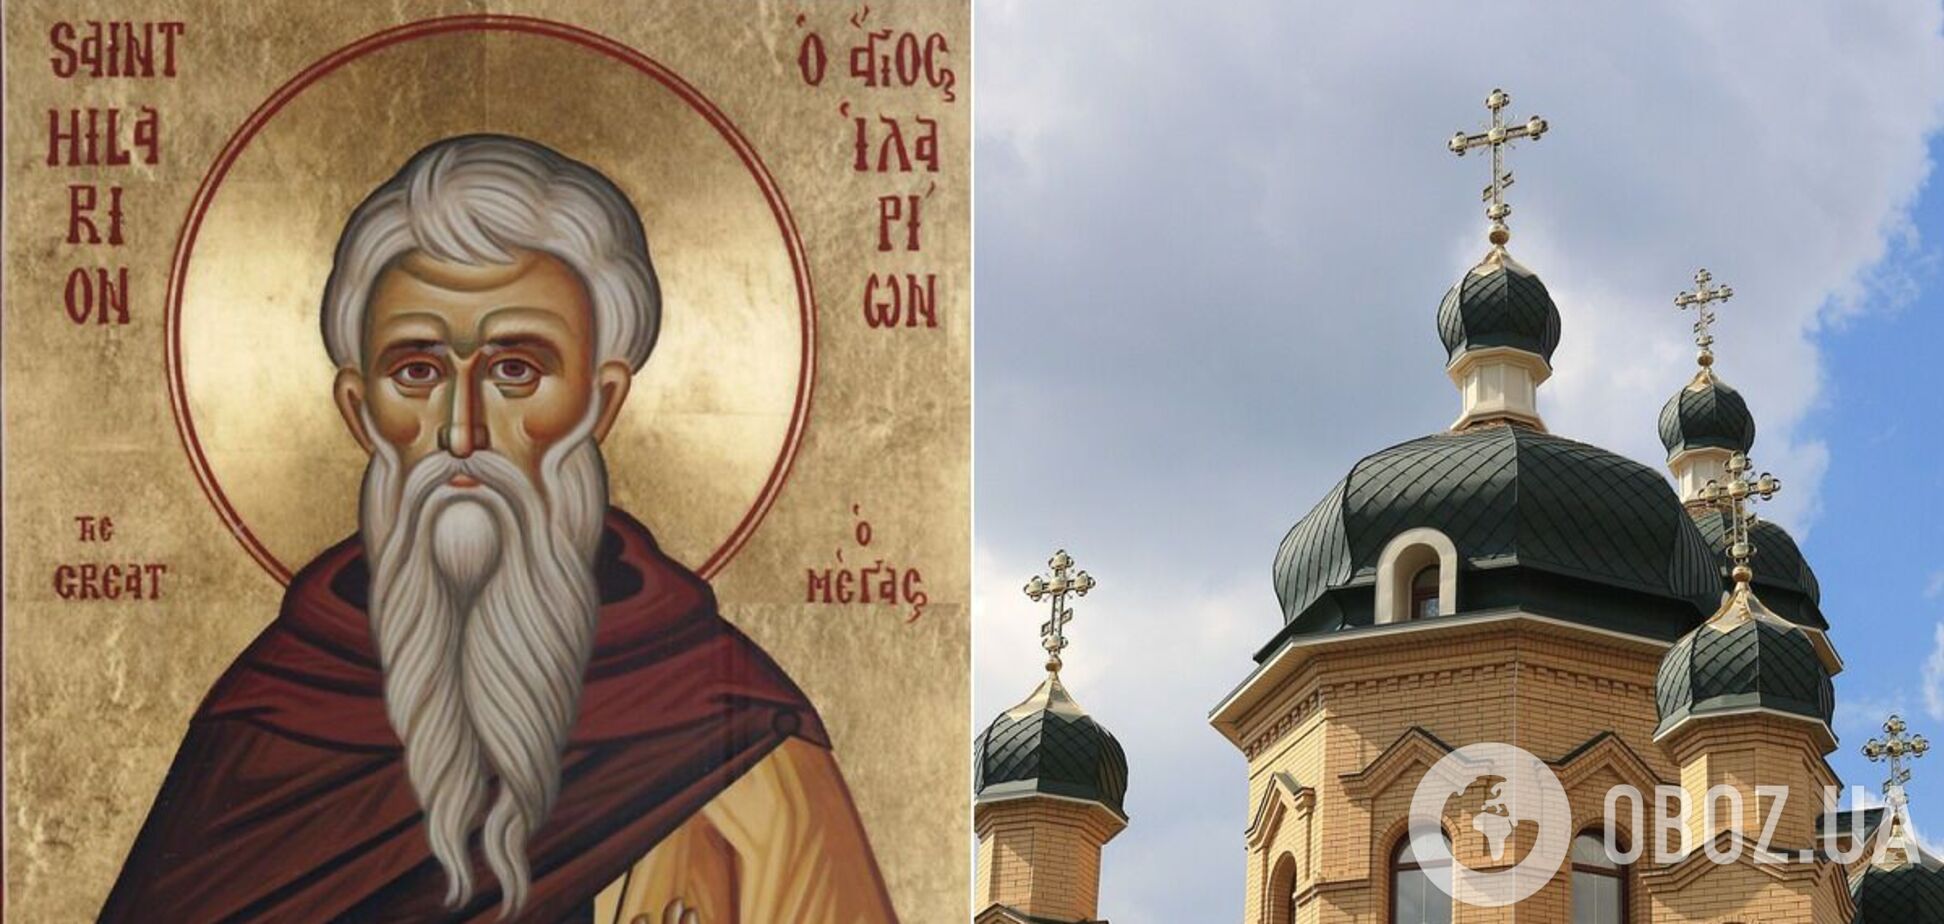 Иларион Великий основал несколько монастырей и был первым проповедником монашества в Палестине